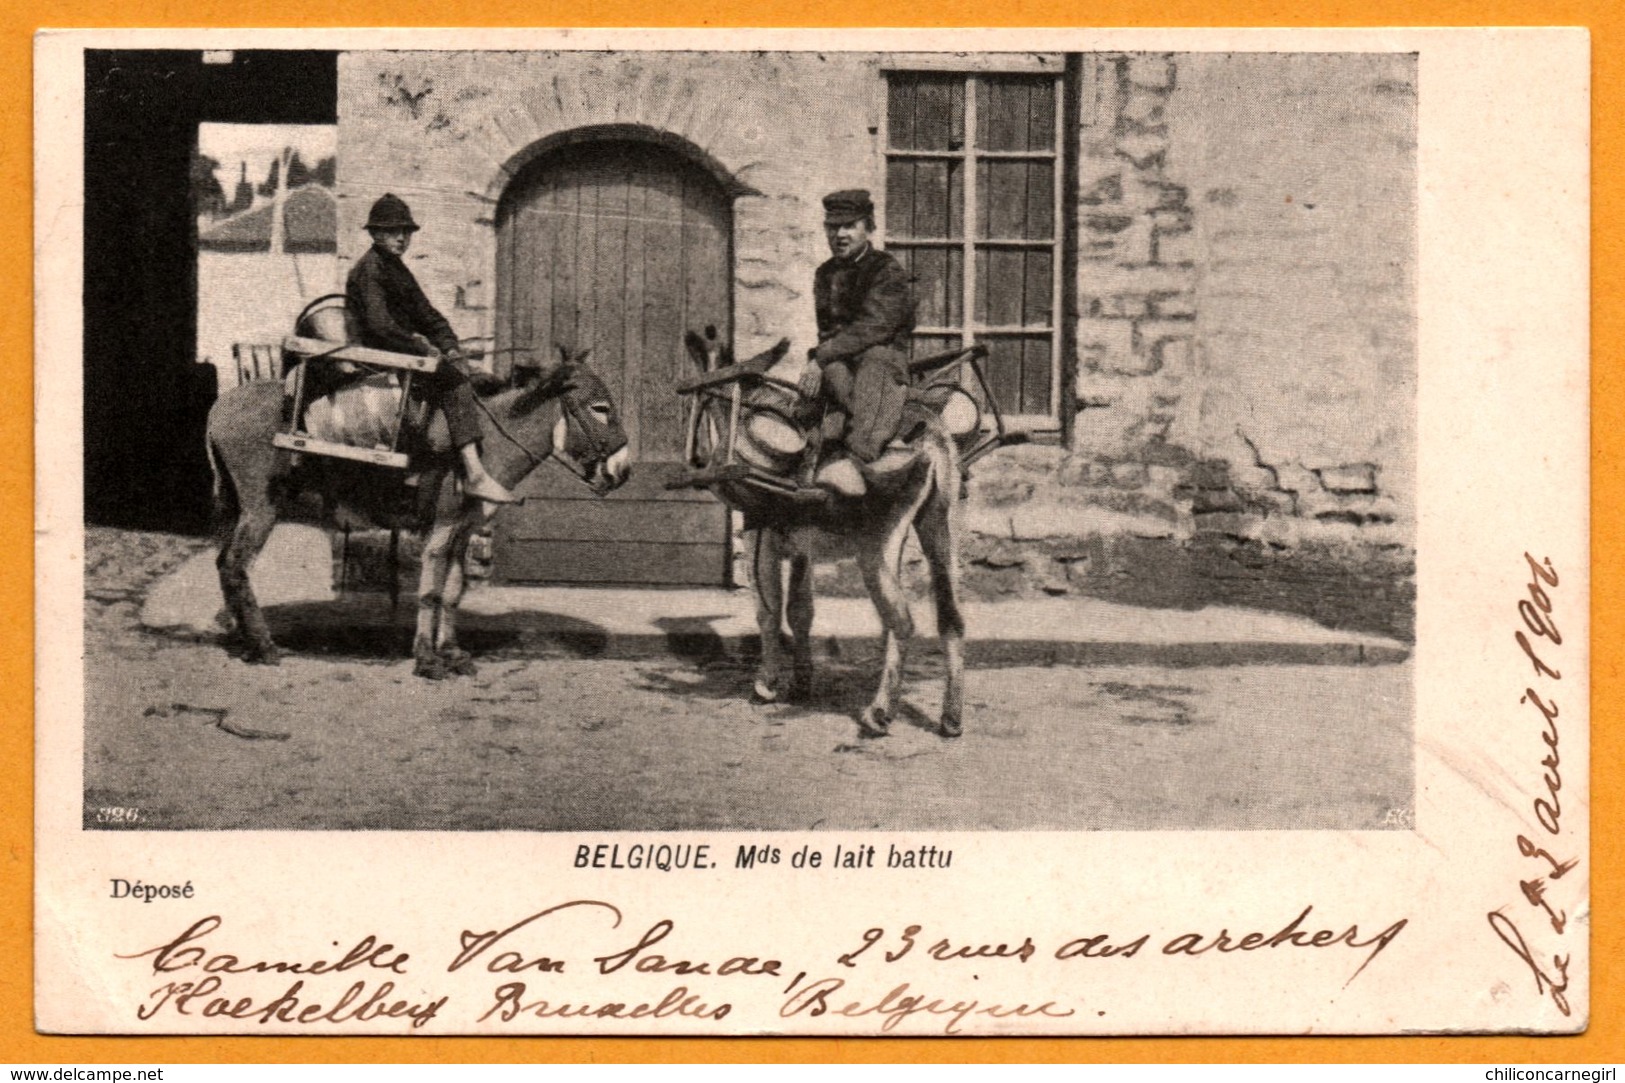 Belgique - Marchands Ambulants De Lait Battu - Mds De Lait Battu - Anes - Mules - Animée - 1901 - N° 326 - Marchands Ambulants